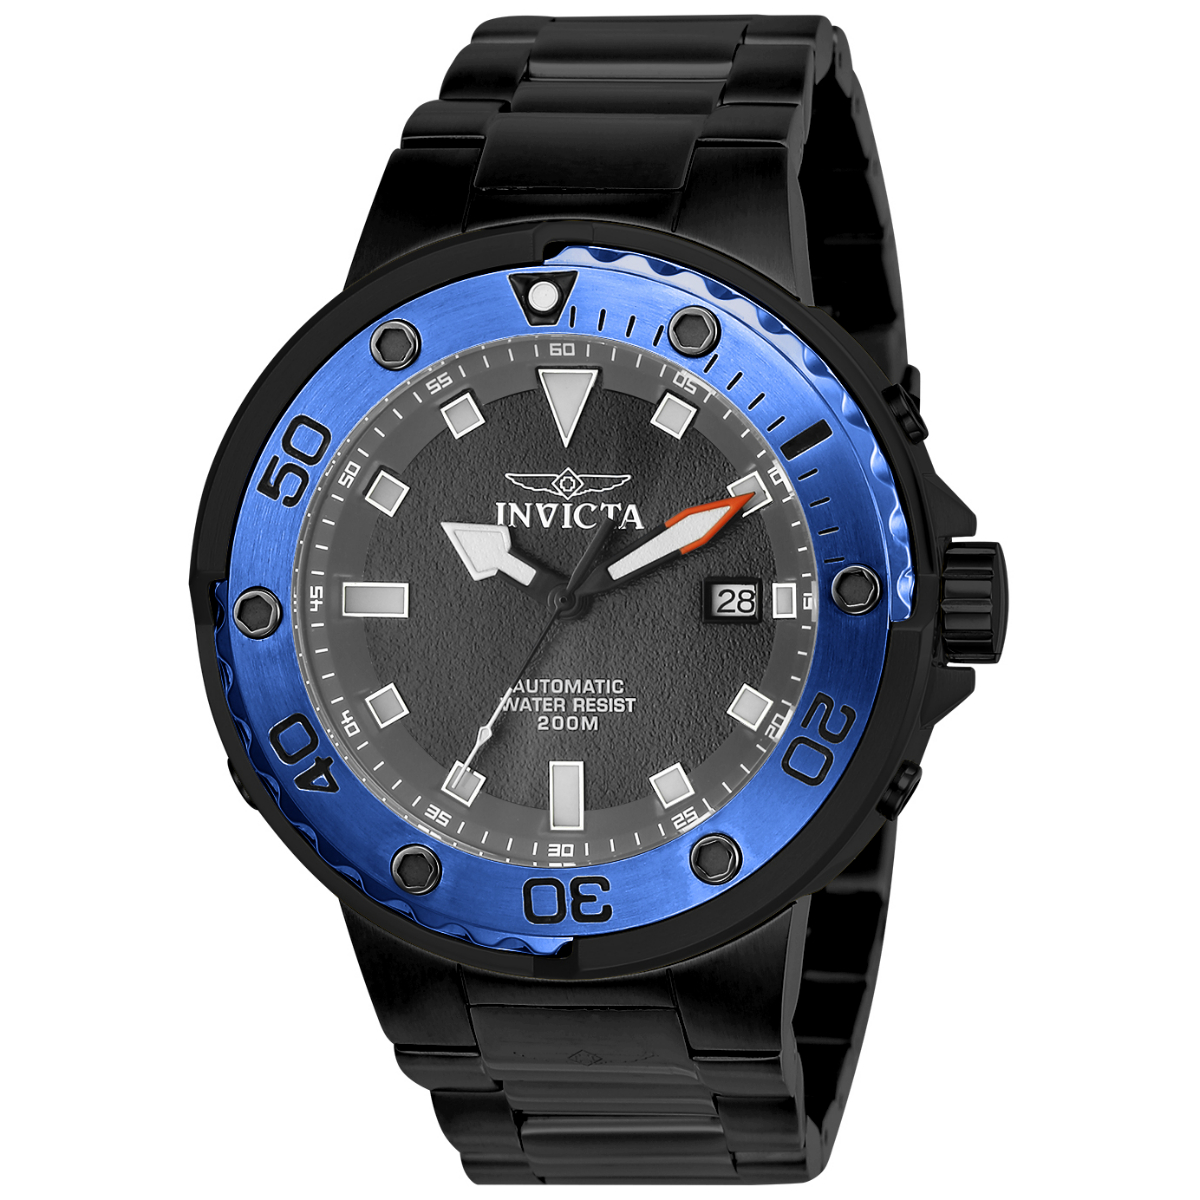 Invicta Pro Diver Automatic Men's Watch - 49mm, Black (ZG-24466)